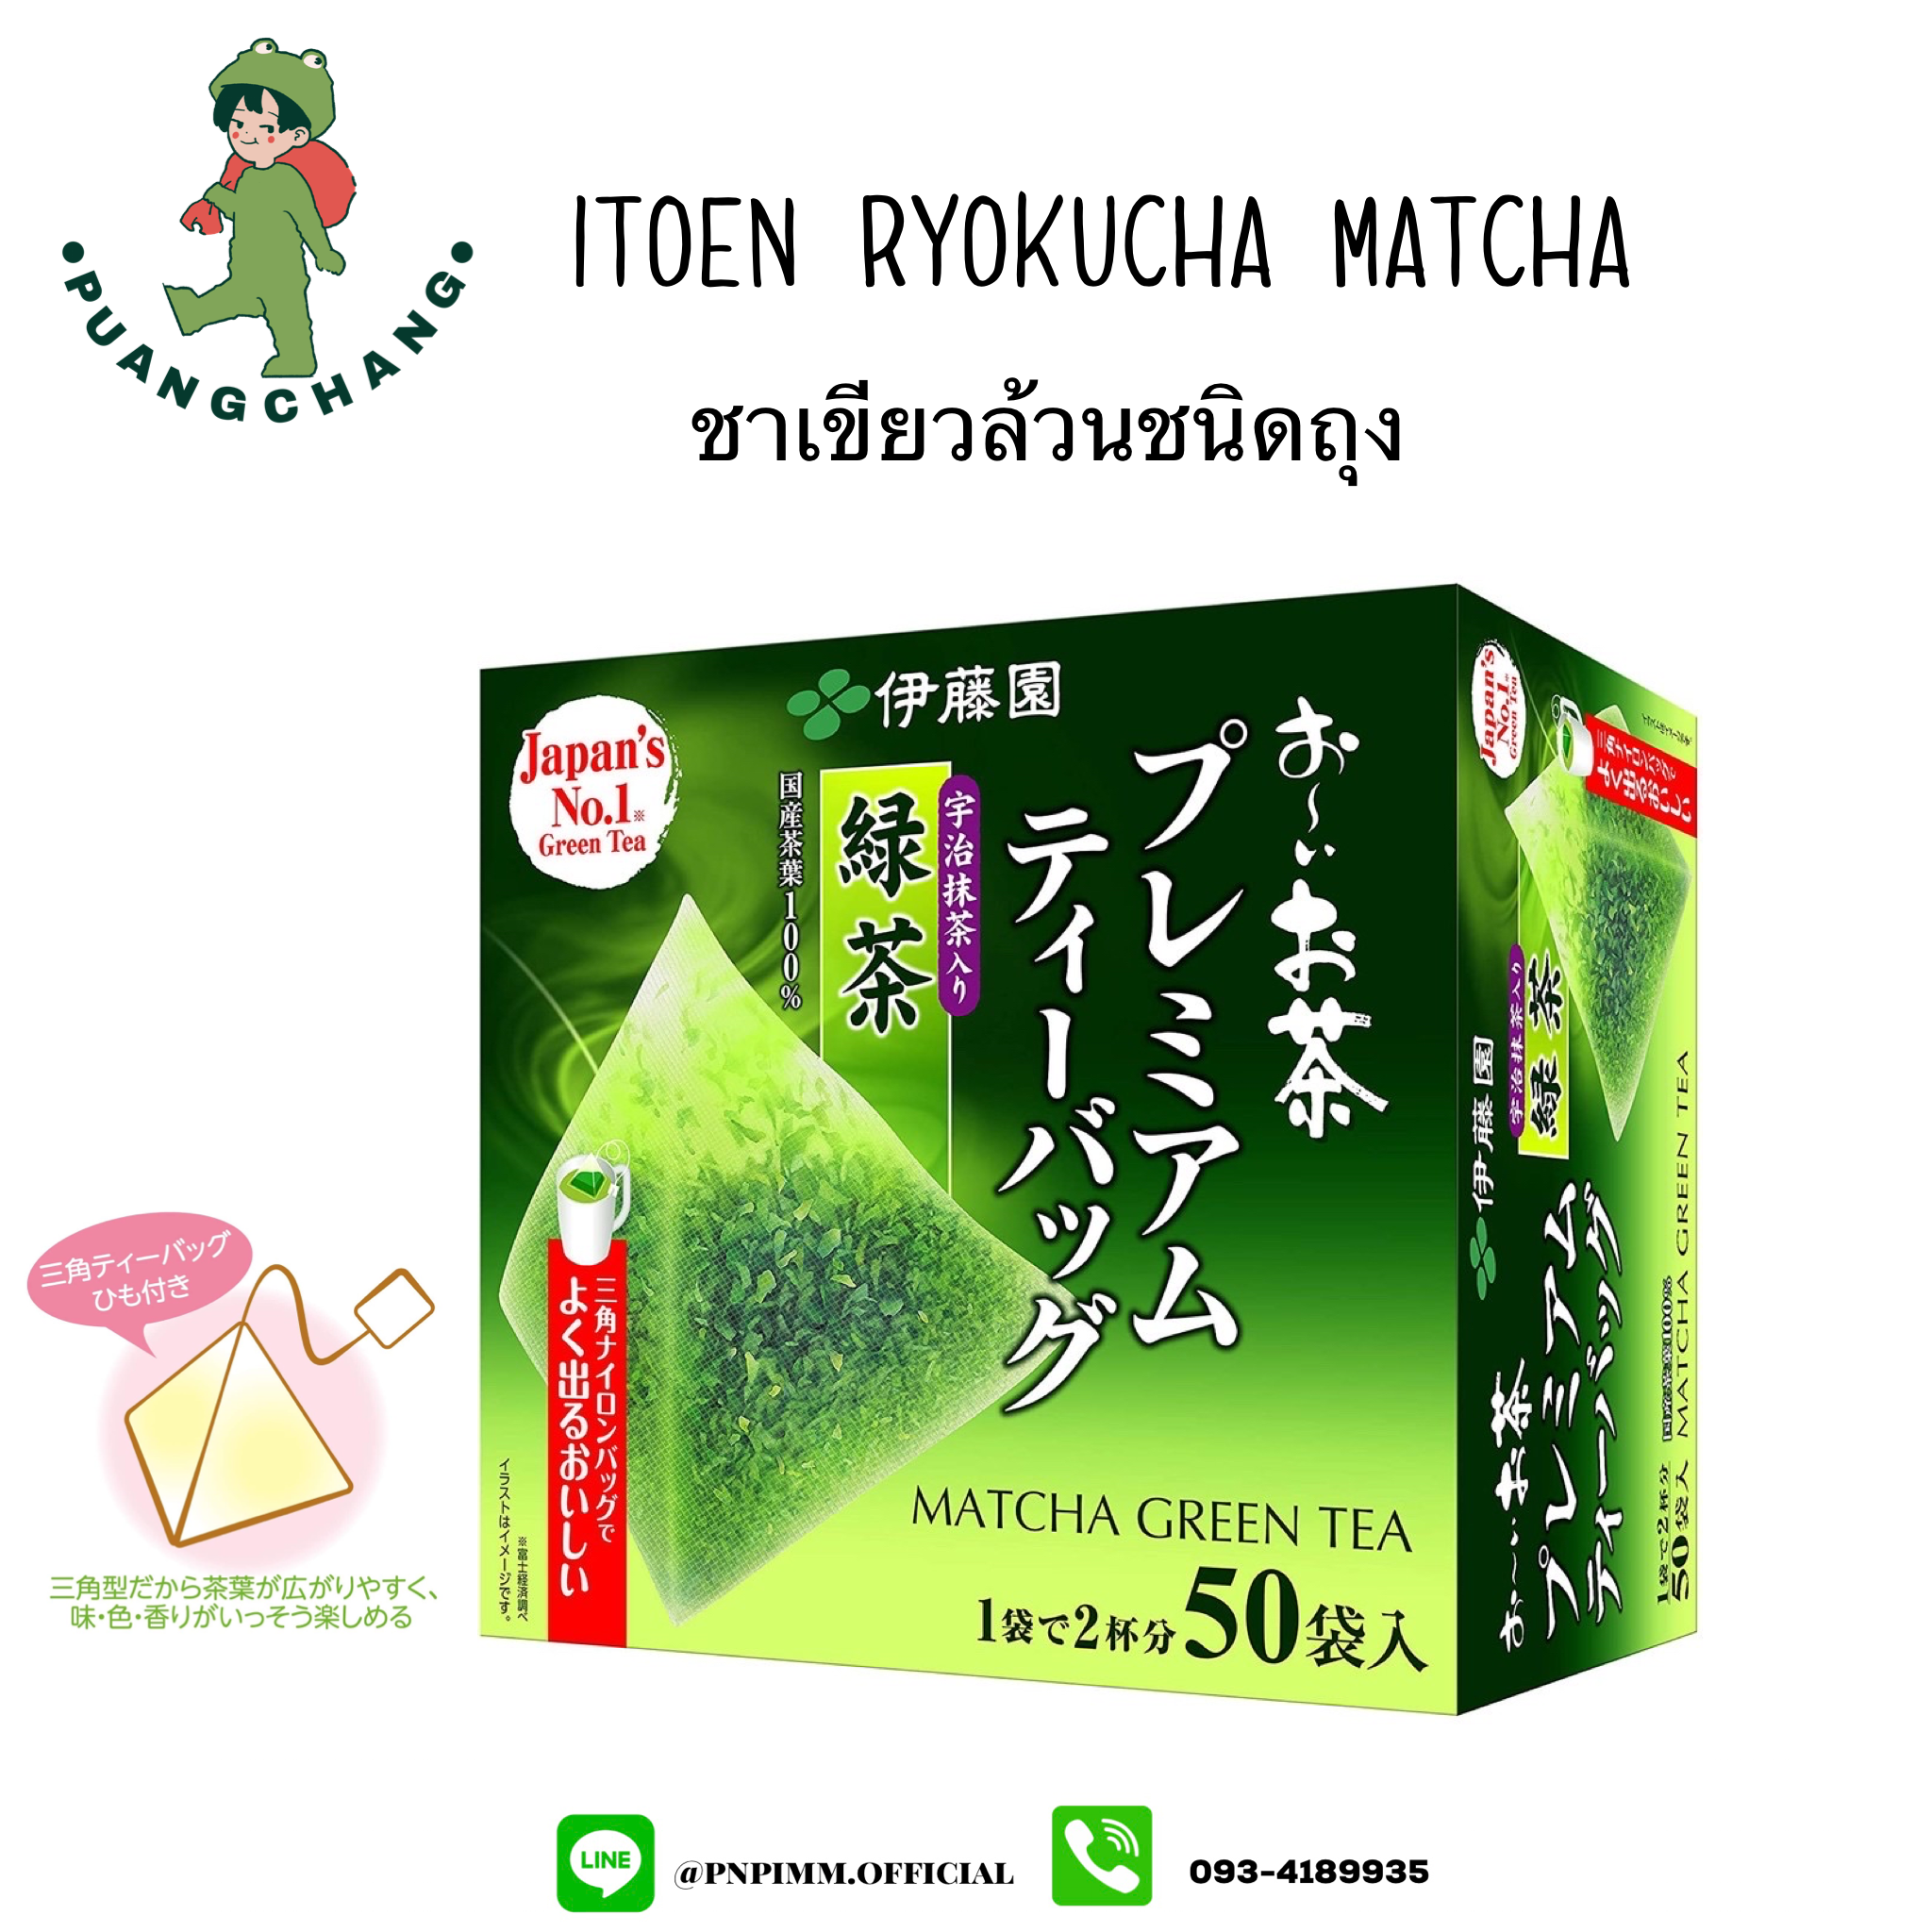 (ชาเขียวล้วน) Itoen Ryokucha Matcha Japanese Green Tea อิโตเอ็น ชาเขียวญี่ปุ่นชนิดถุงชงพร้อมดื่ม 1 กล่อง (50 ถุง)